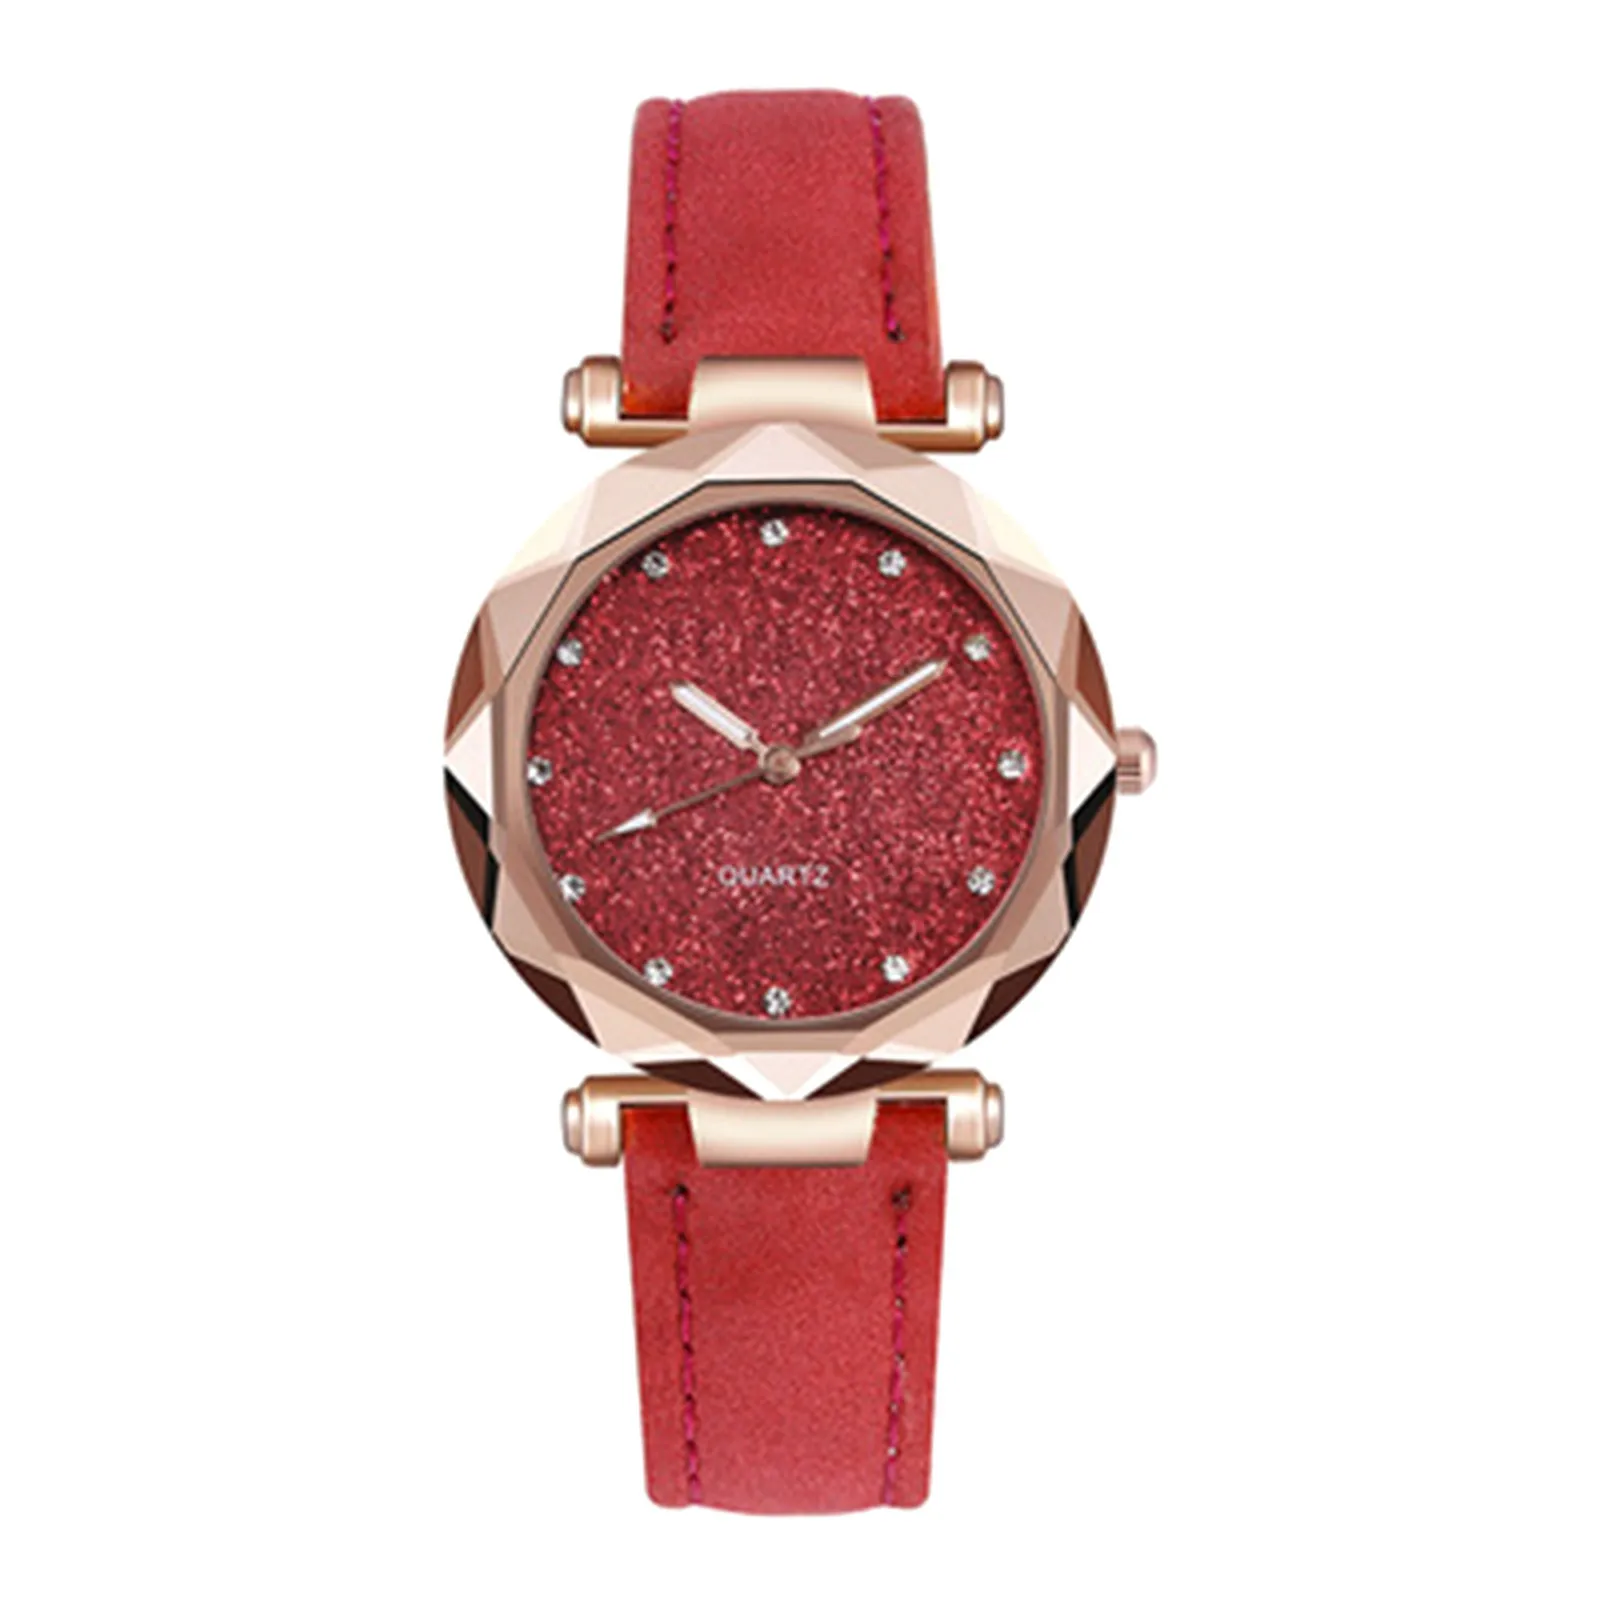 

New Star Watch Women's Fashion Leisure Watch Rhinestone Frosted Belt Watch часы женские наручные Reloj mujer Relógio feminino